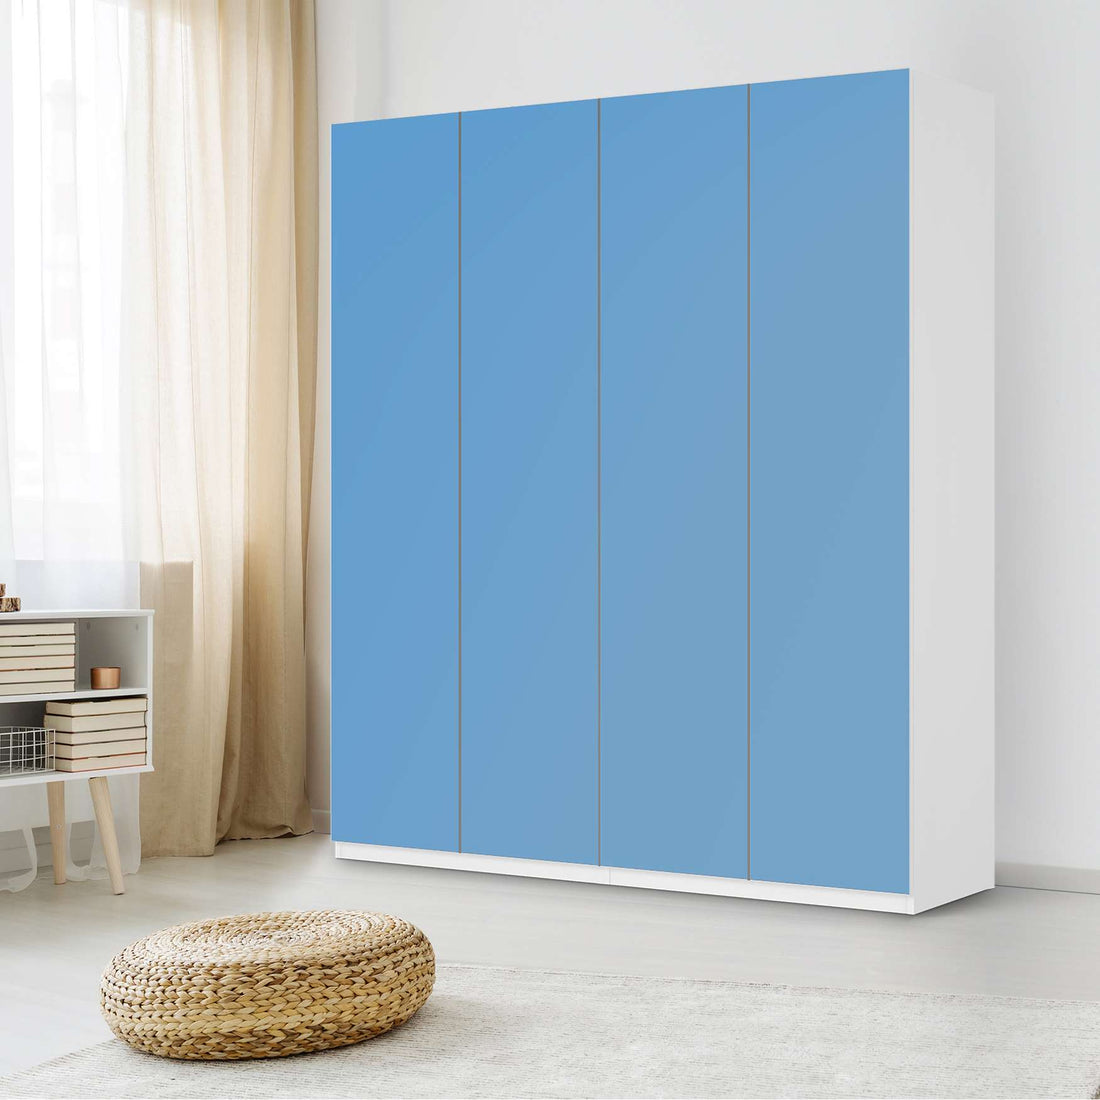 Möbelfolie Blau Light - IKEA Pax Schrank 236 cm Höhe - 4 Türen - Schlafzimmer